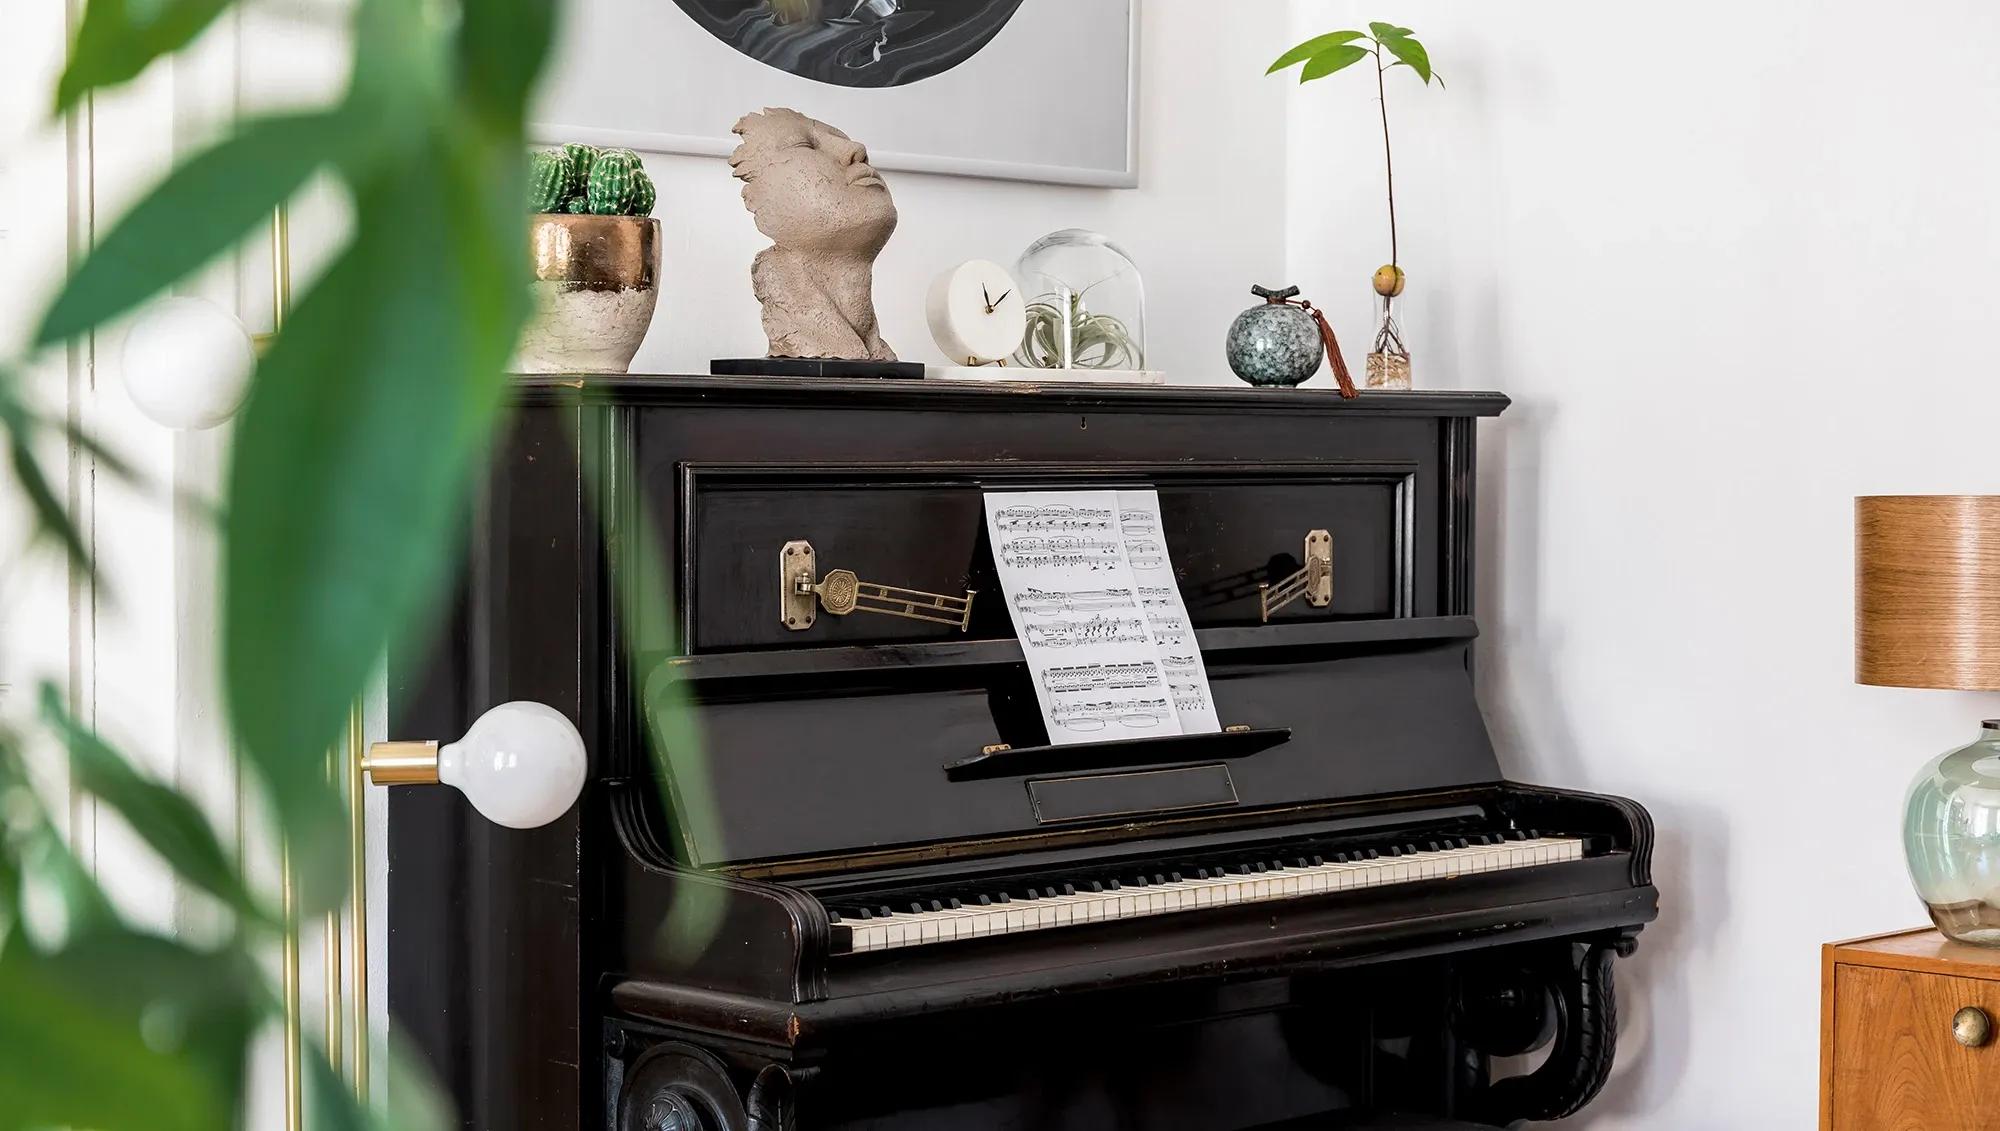 Vackert, gammalt piano har flyttats av flyttfirma till nytt hus med vacker inredning och dekoration